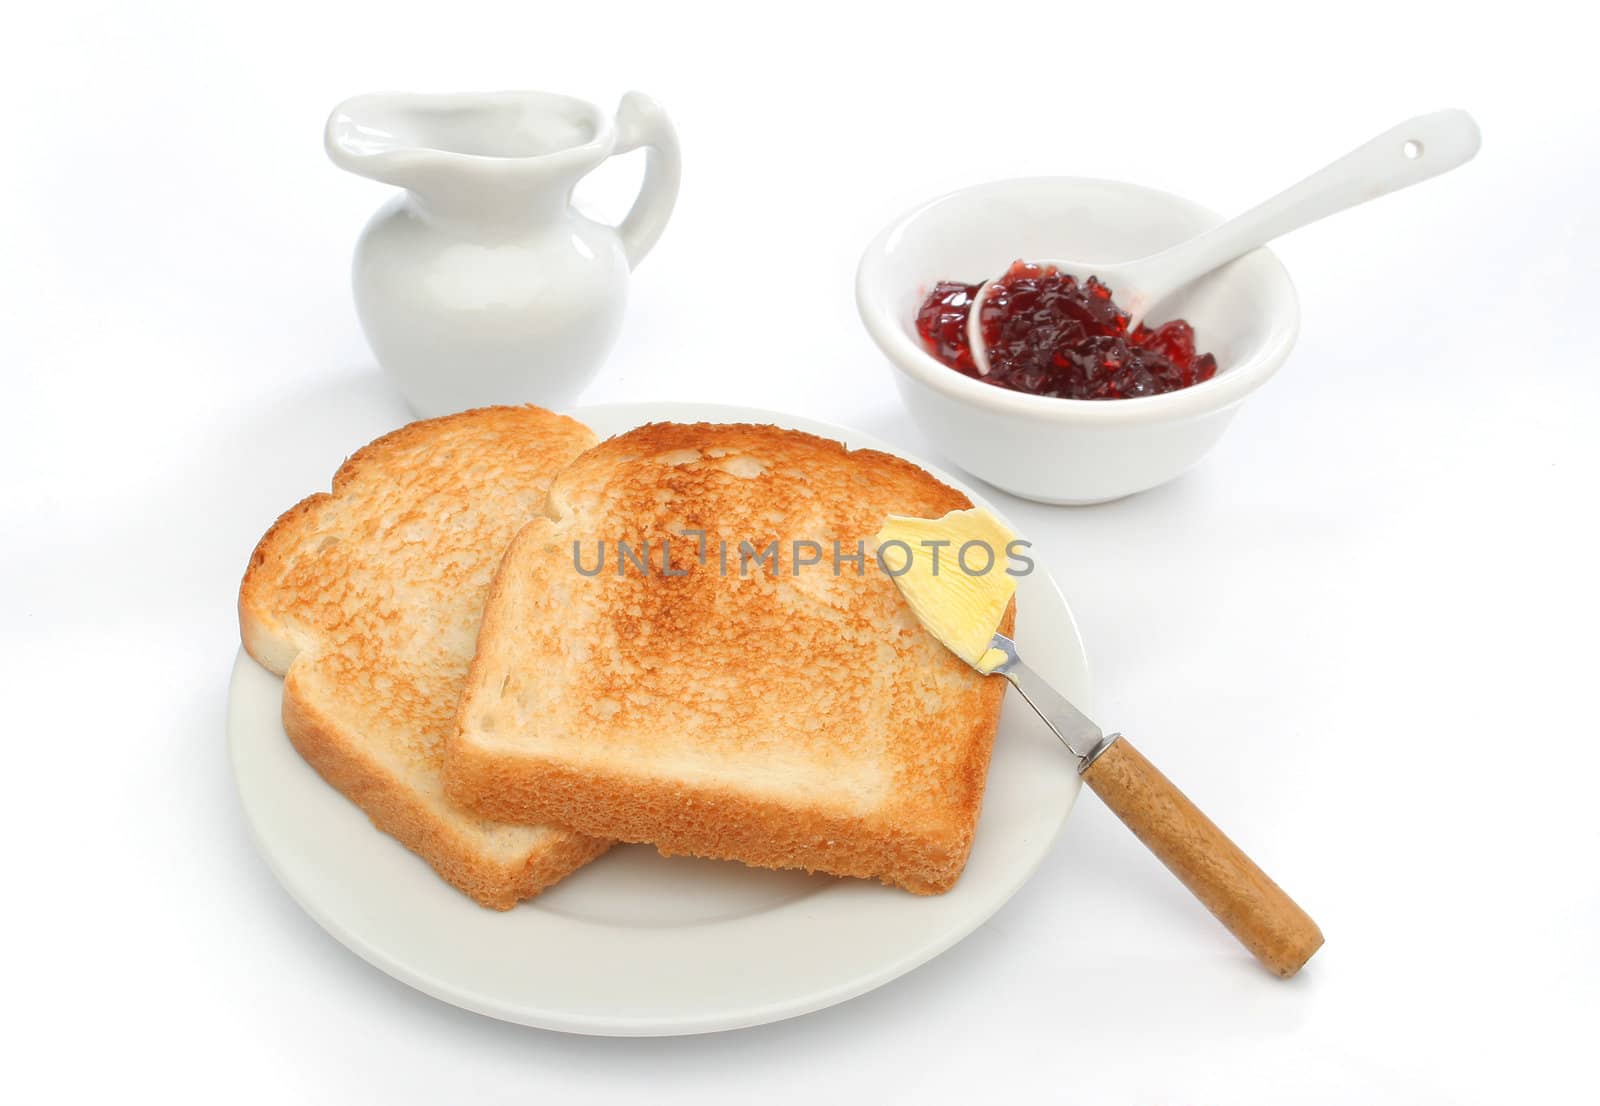 A beautiful breakfast scene by Erdosain